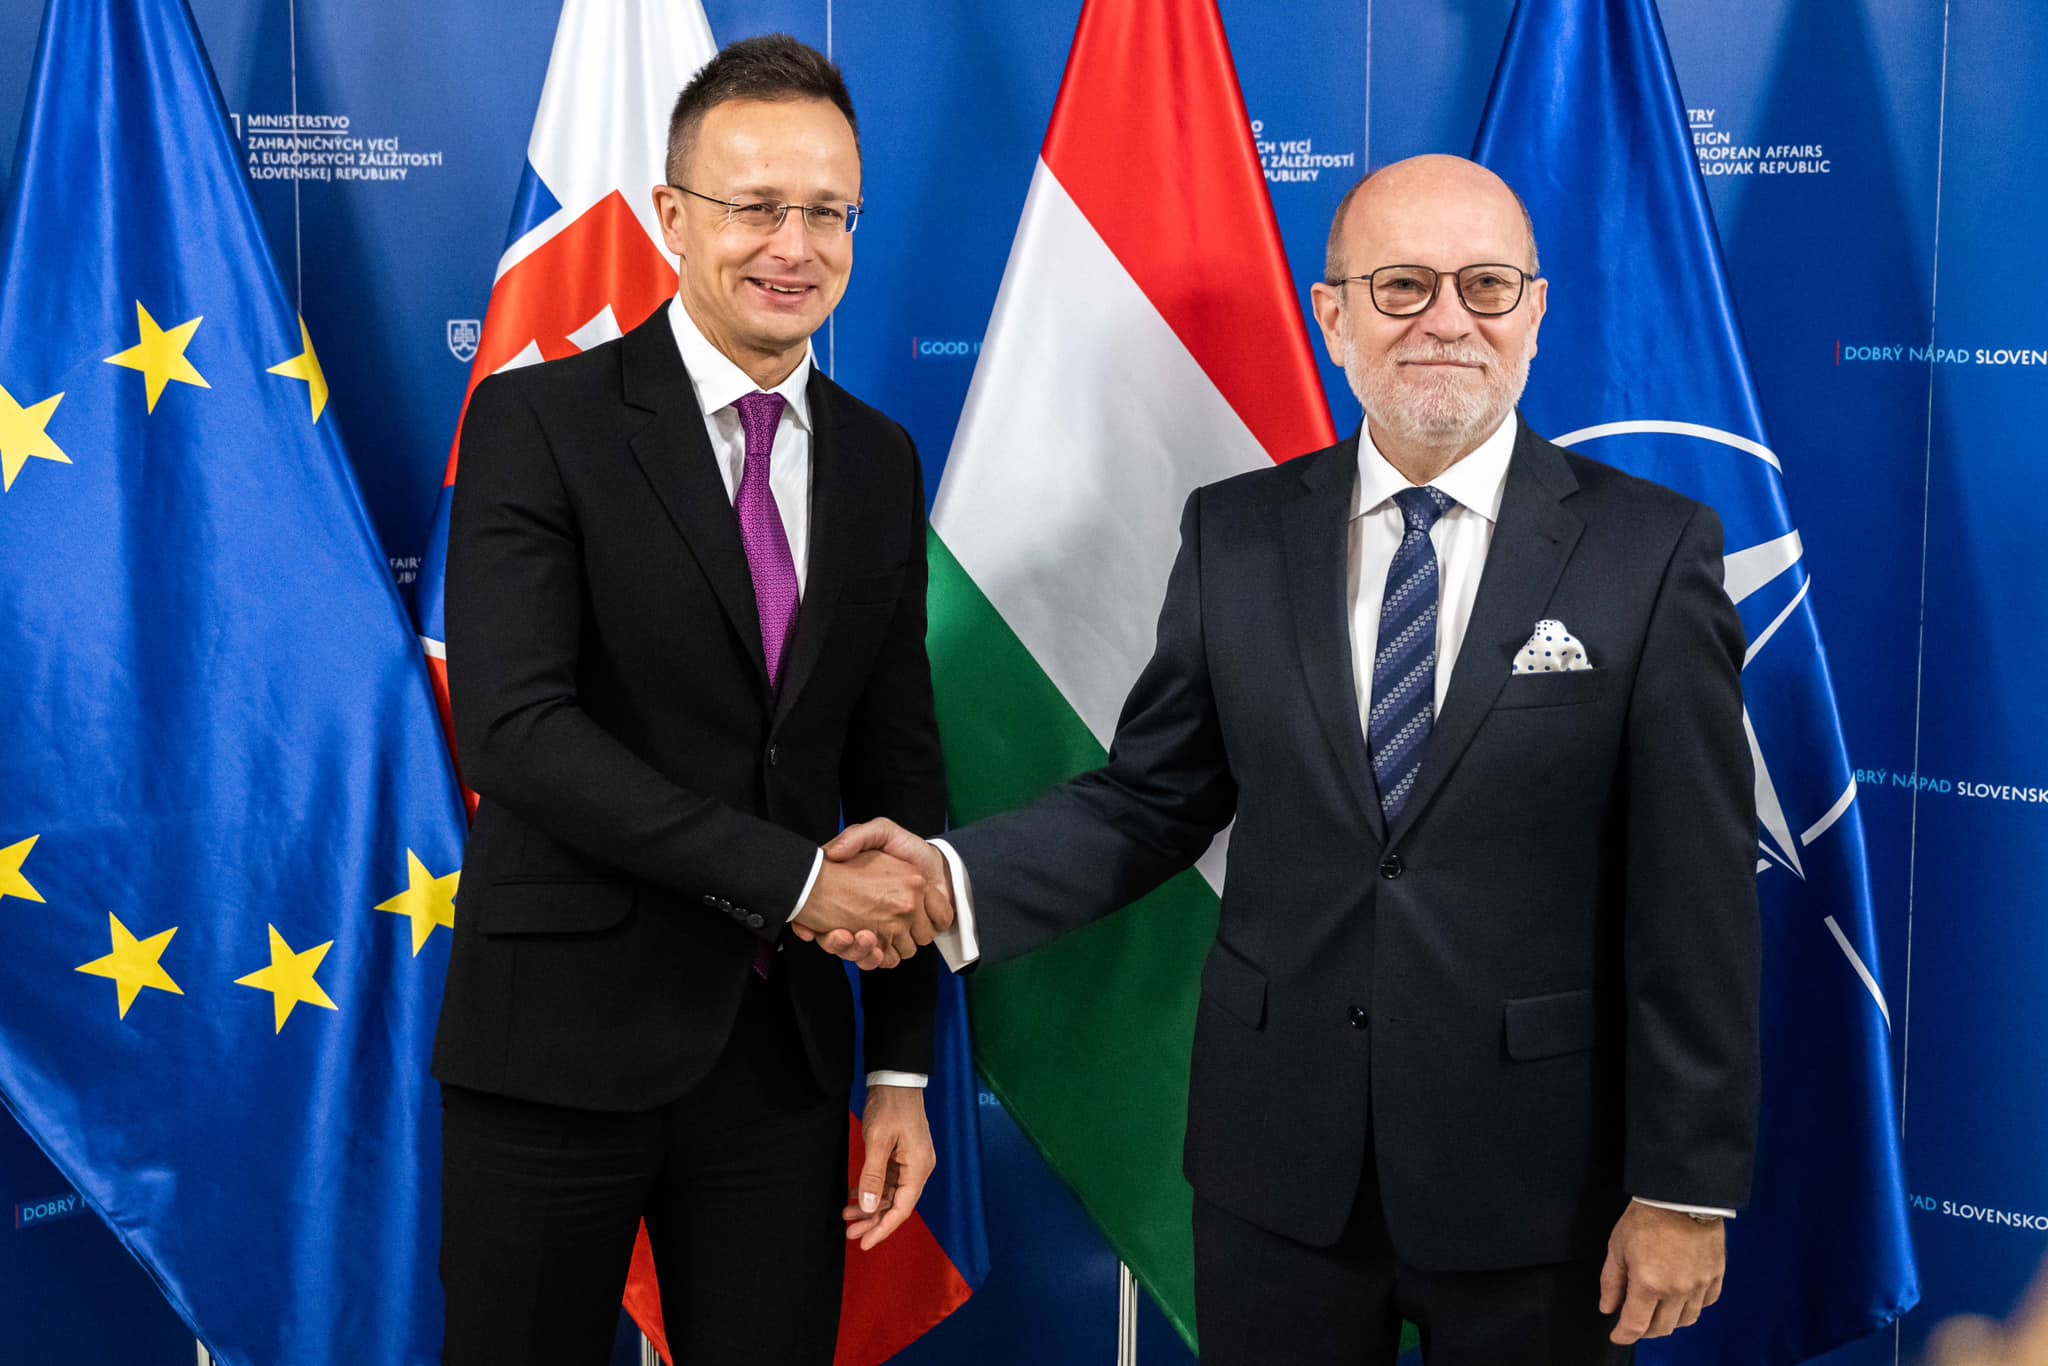 Beziehungen zwischen Ungarn und der Slowakei sind zuverlässig